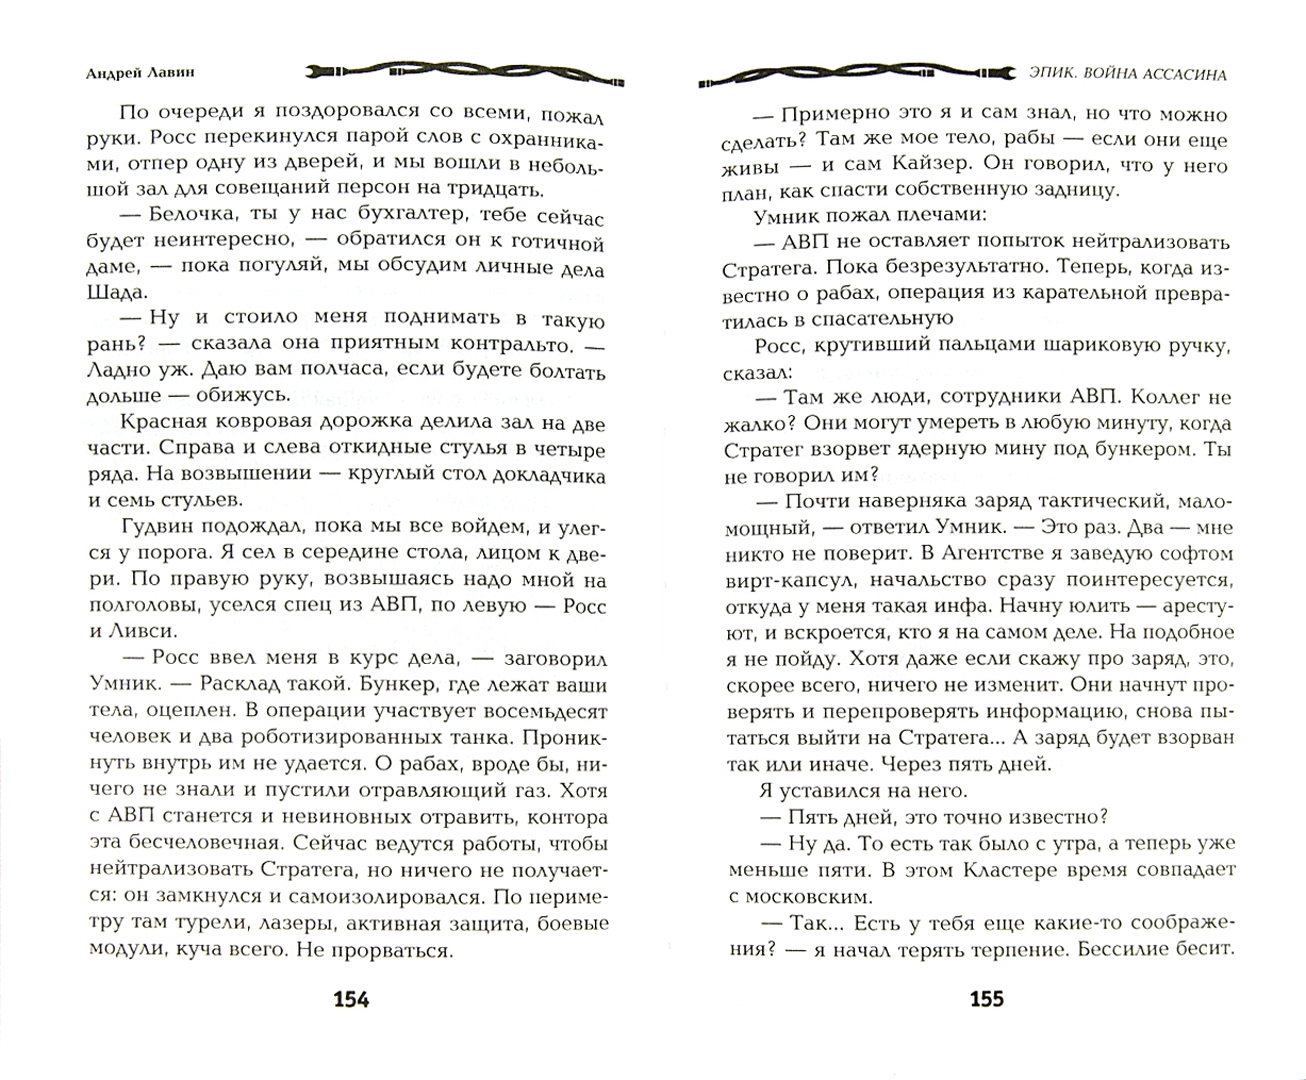 Иллюстрация 1 из 9 для Эпик. Война Ассасина - Андрей Лавин | Лабиринт - книги. Источник: Лабиринт